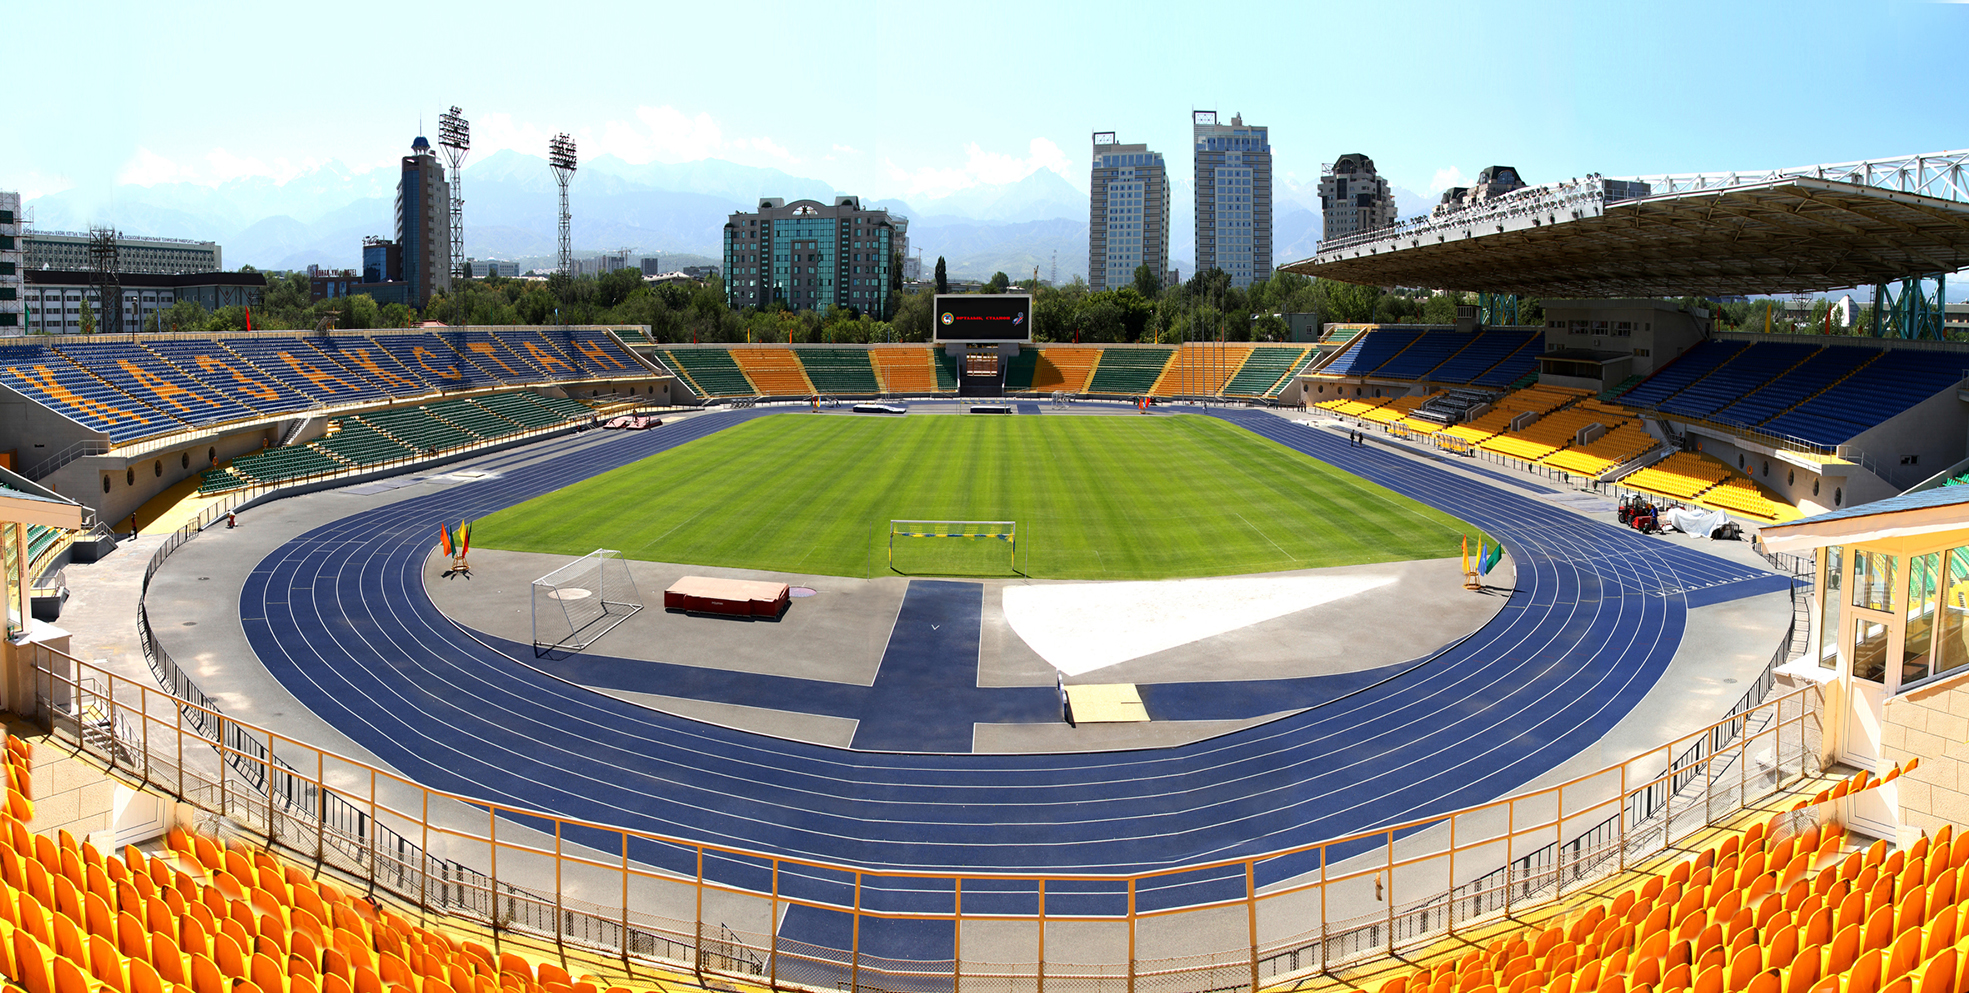 Центральный стадион Алматы